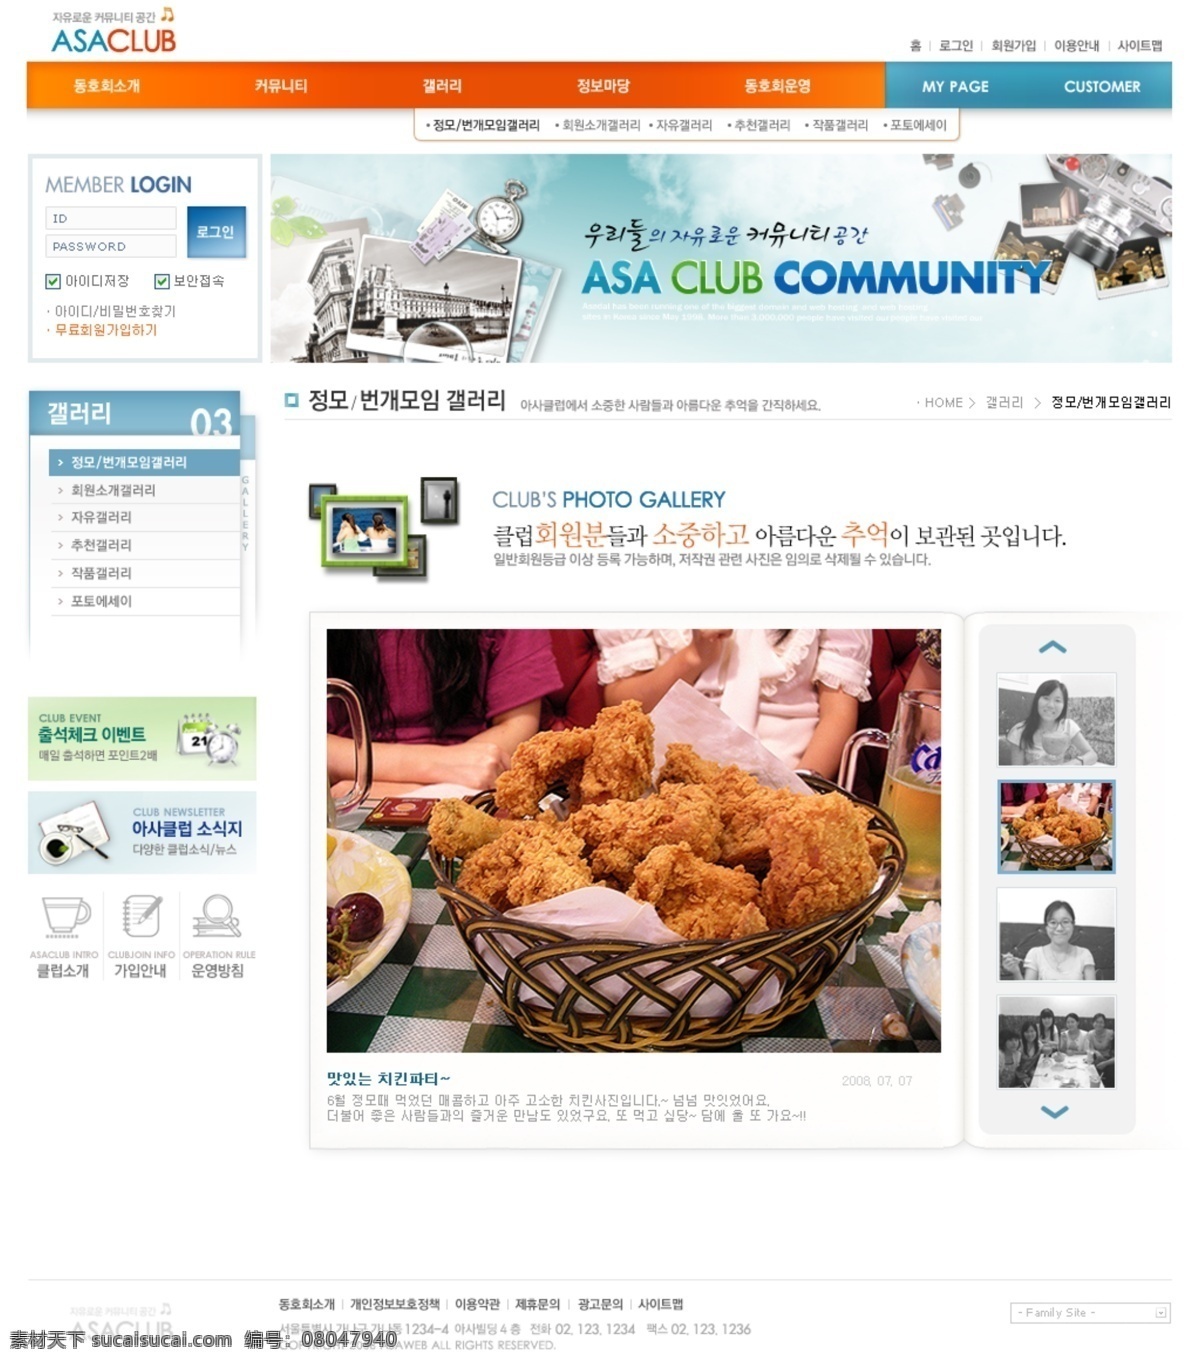 公司网站 韩国模板 韩国模版 韩国网页模板 简洁网页 旅游 模板 社会 网页模板 网页 生活网页 网页分层素材 网站 源文件 网页素材